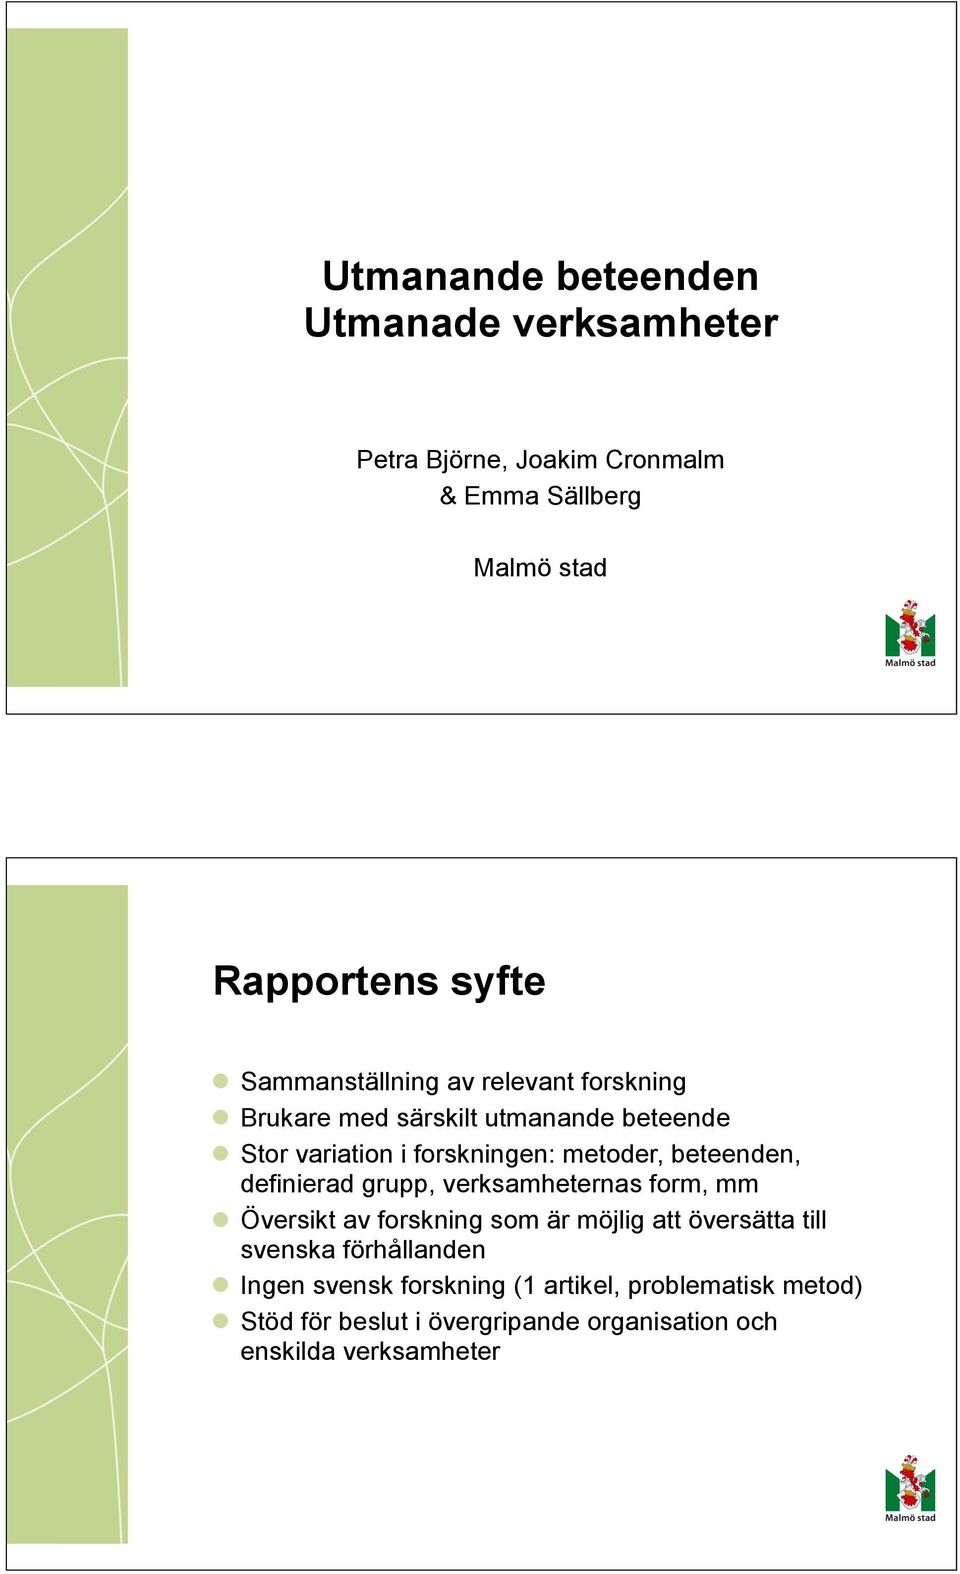 beteenden, definierad grupp, verksamheternas form, mm Översikt av forskning som är möjlig att översätta till svenska